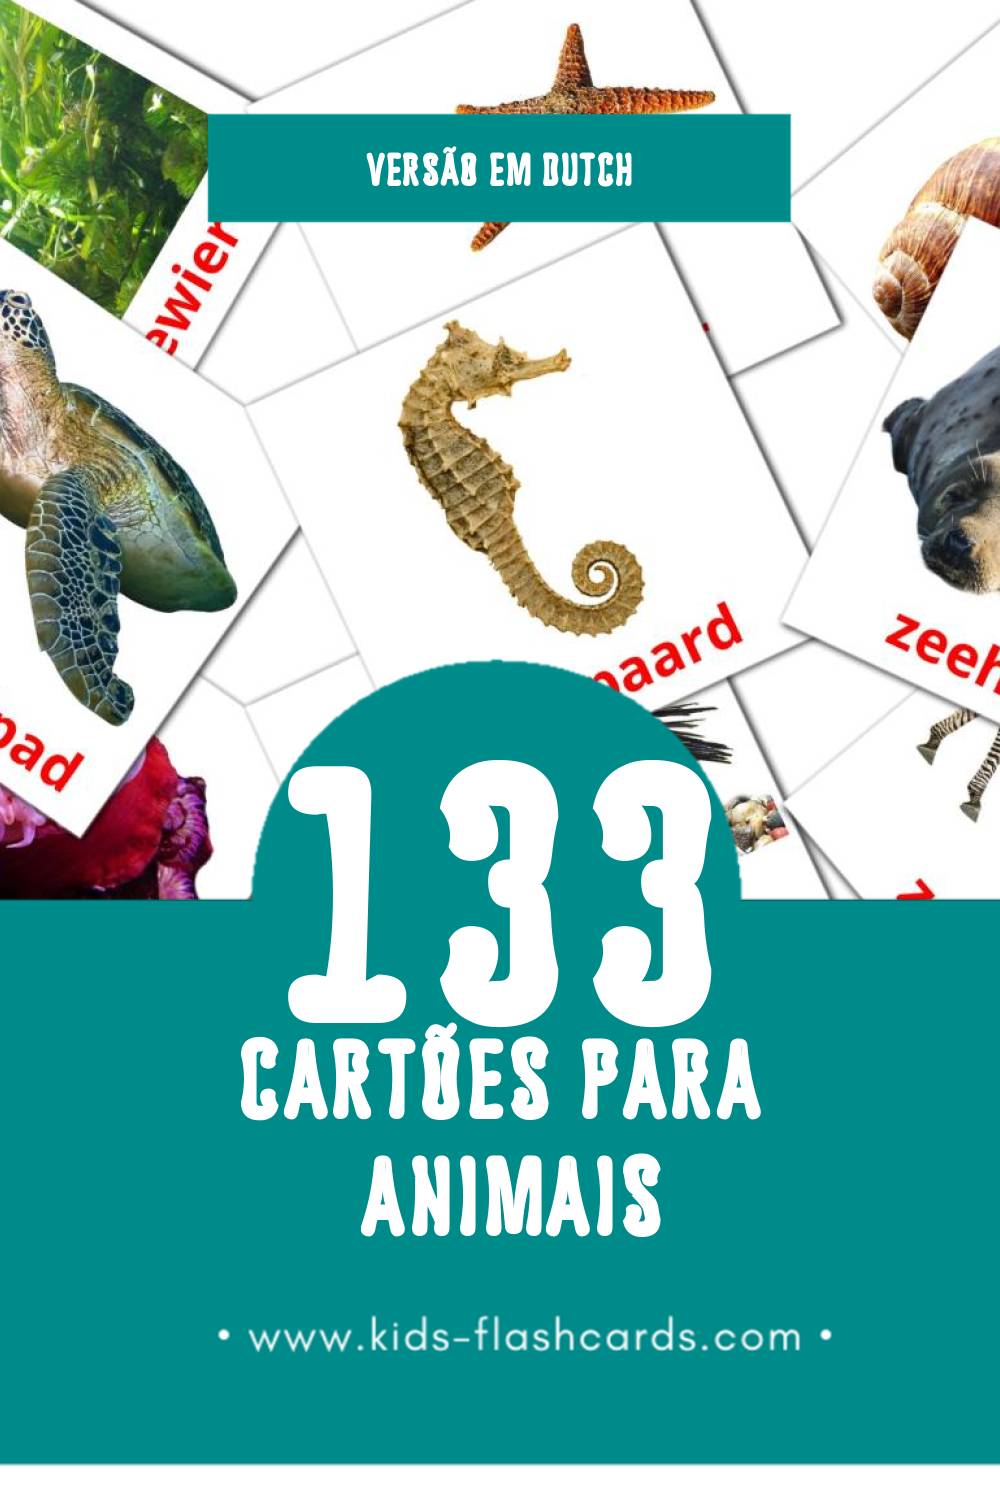 Flashcards de Dieren Visuais para Toddlers (133 cartões em Dutch)